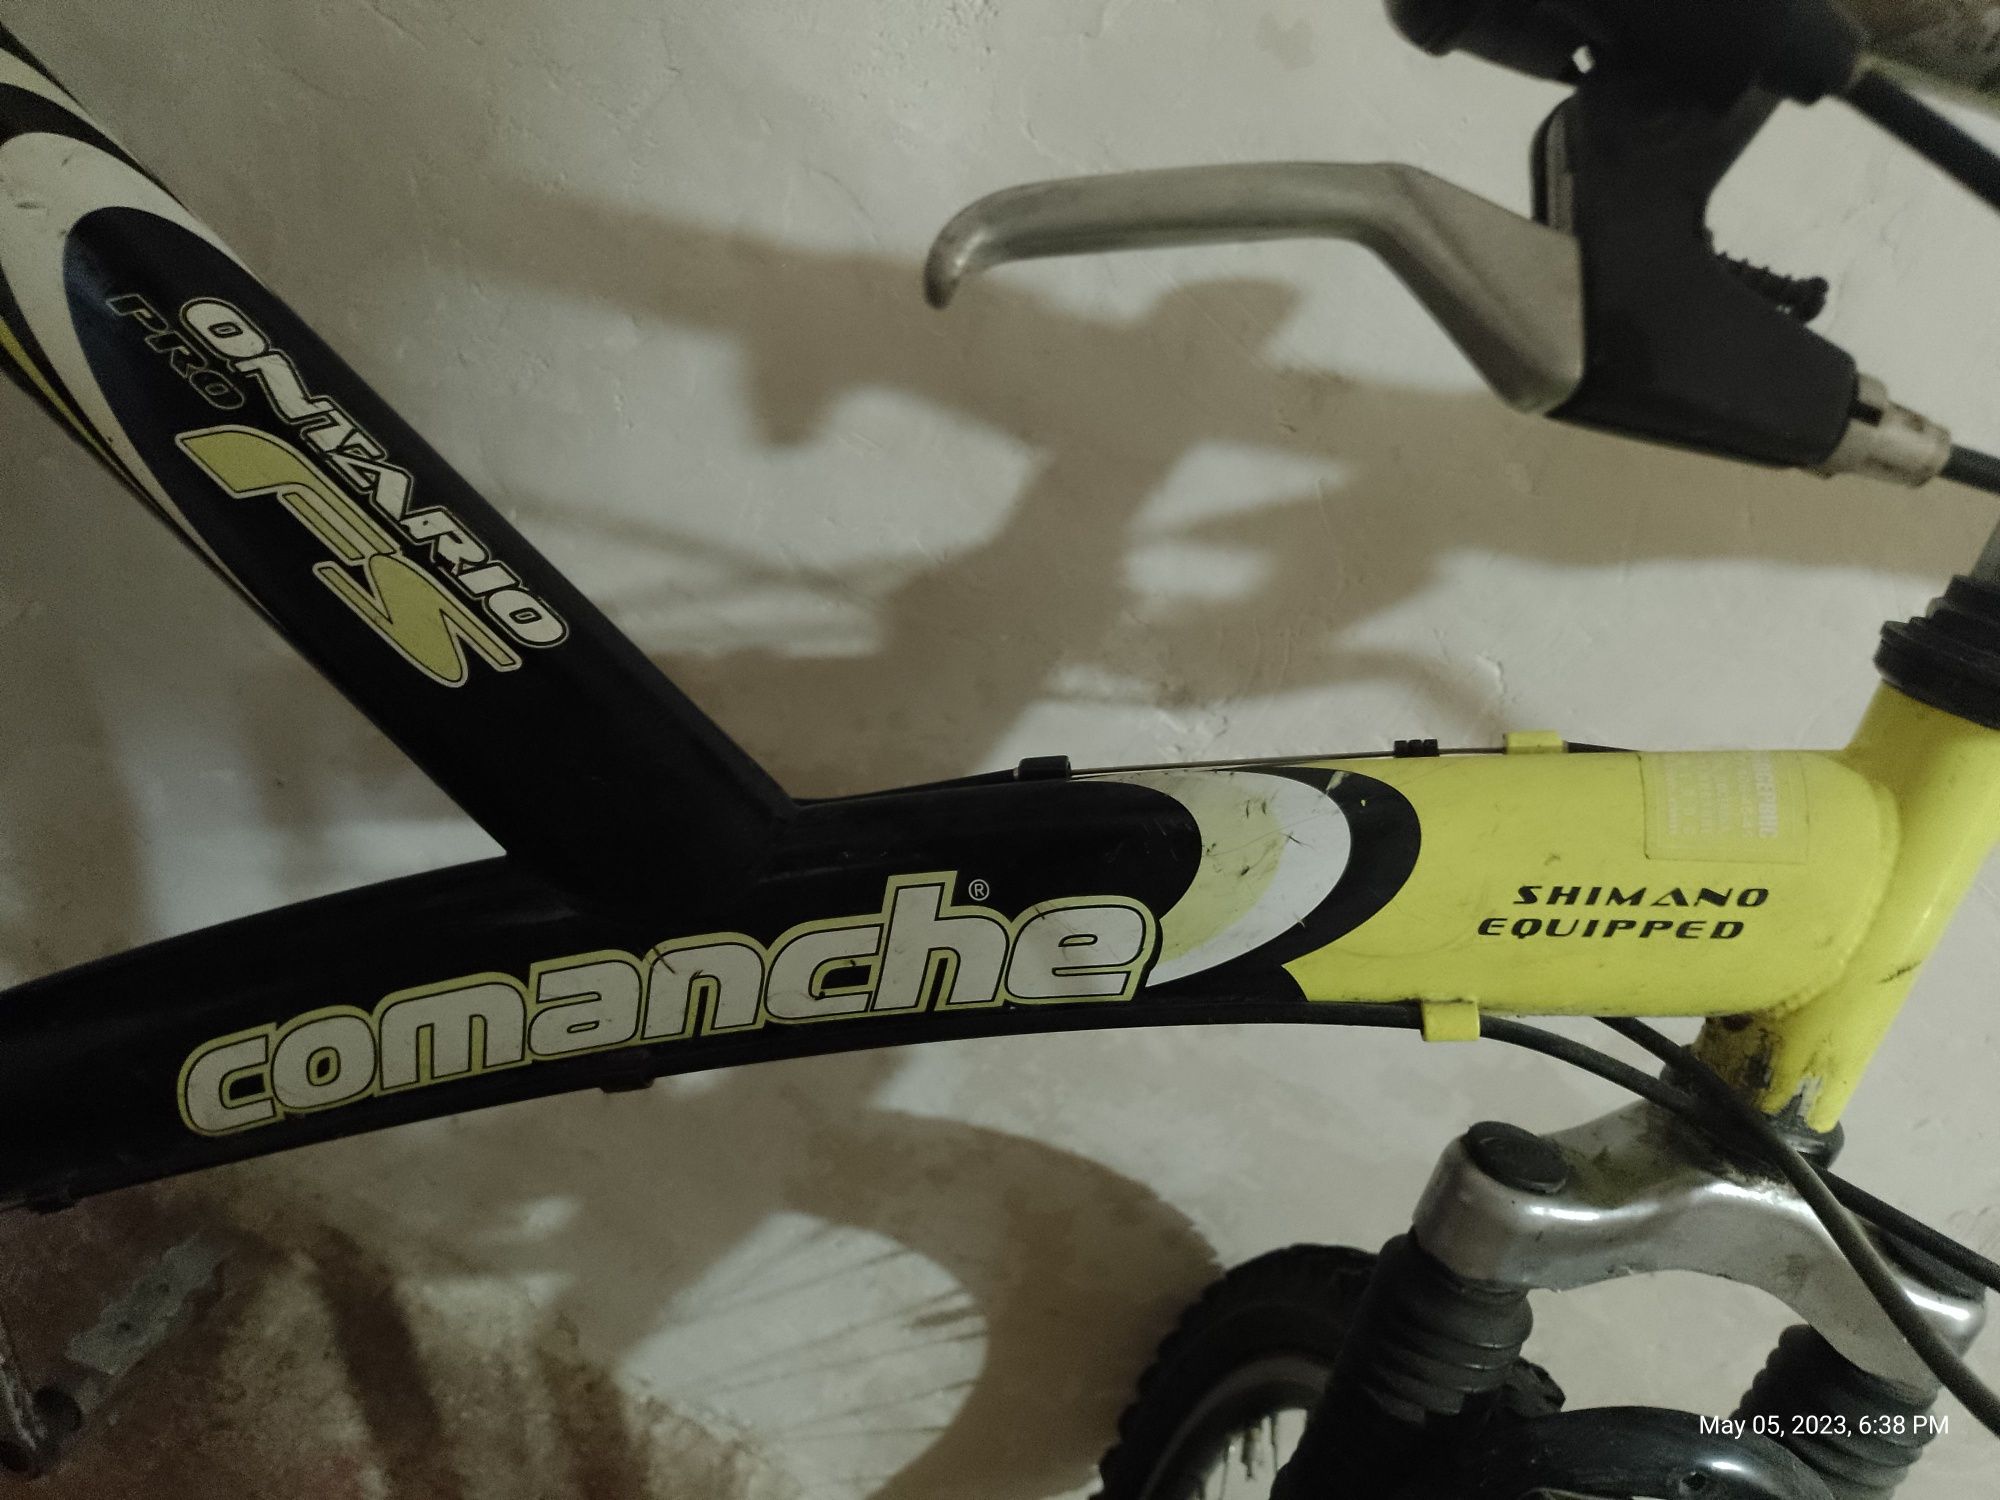 Срочно! Велосипед Comanche shimano equipped